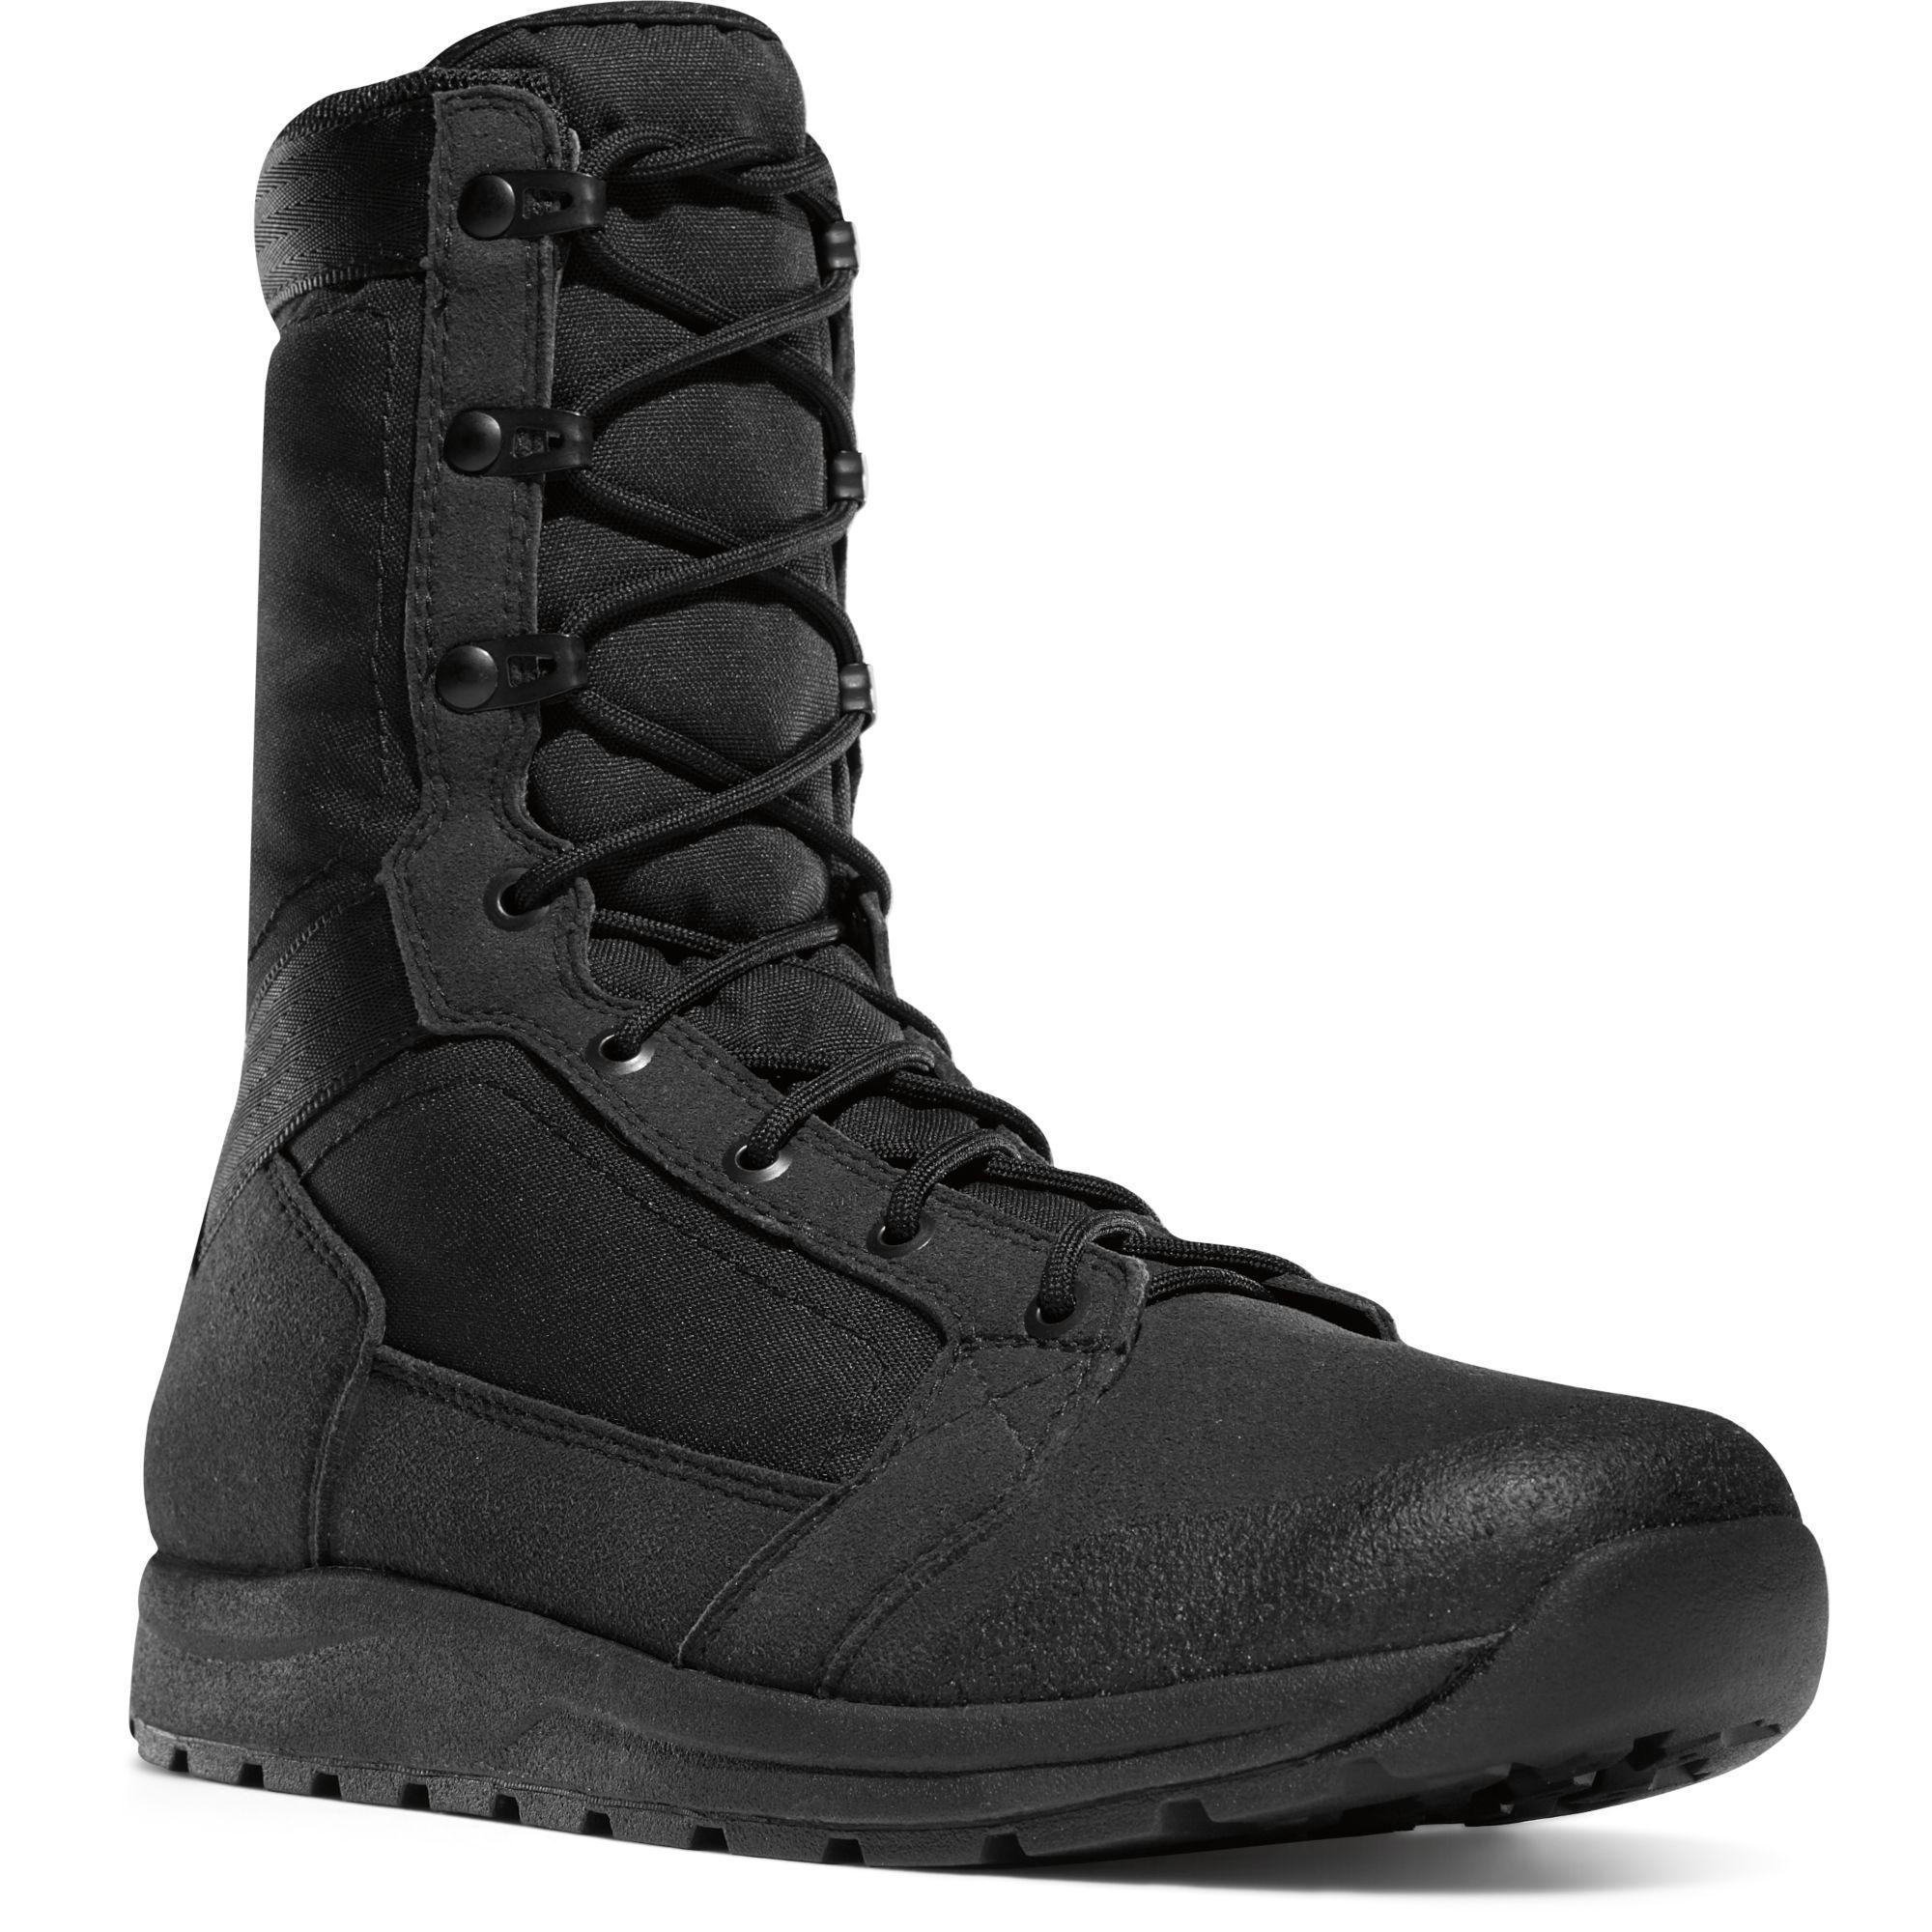 Danner Men's Tachayon Duty Boot - Black - 50120 7 / Medium / Black - Overlook Boots